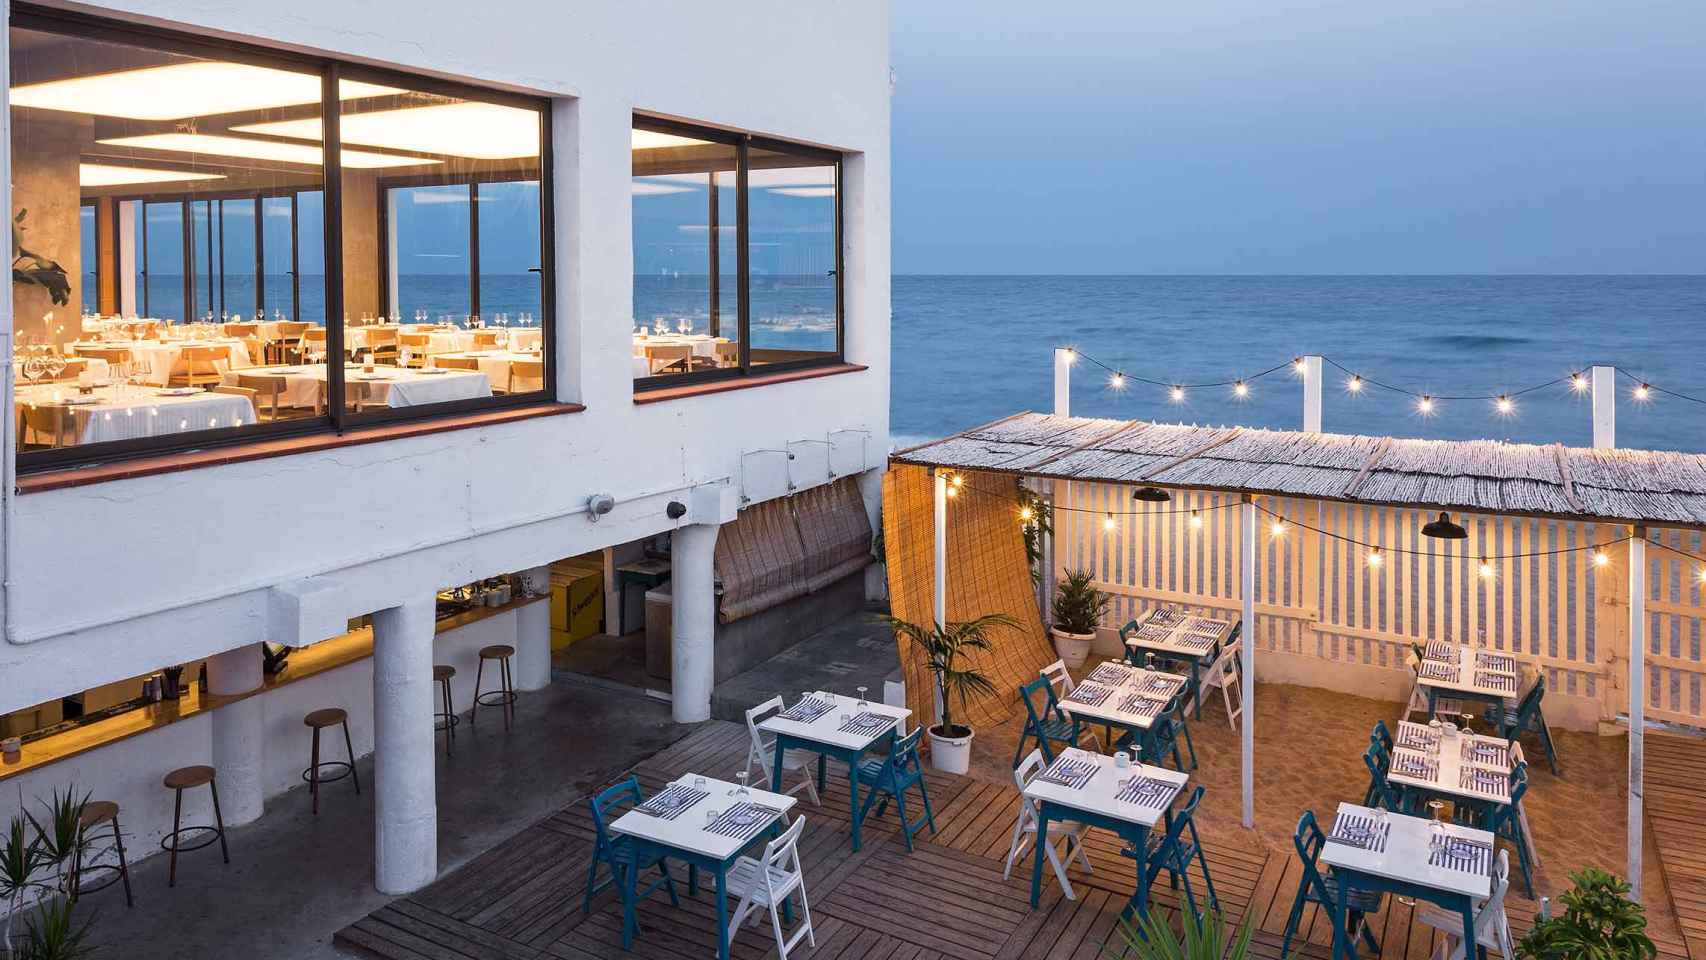 Terraza del restaurante La Donzella de la Costa de Badalona